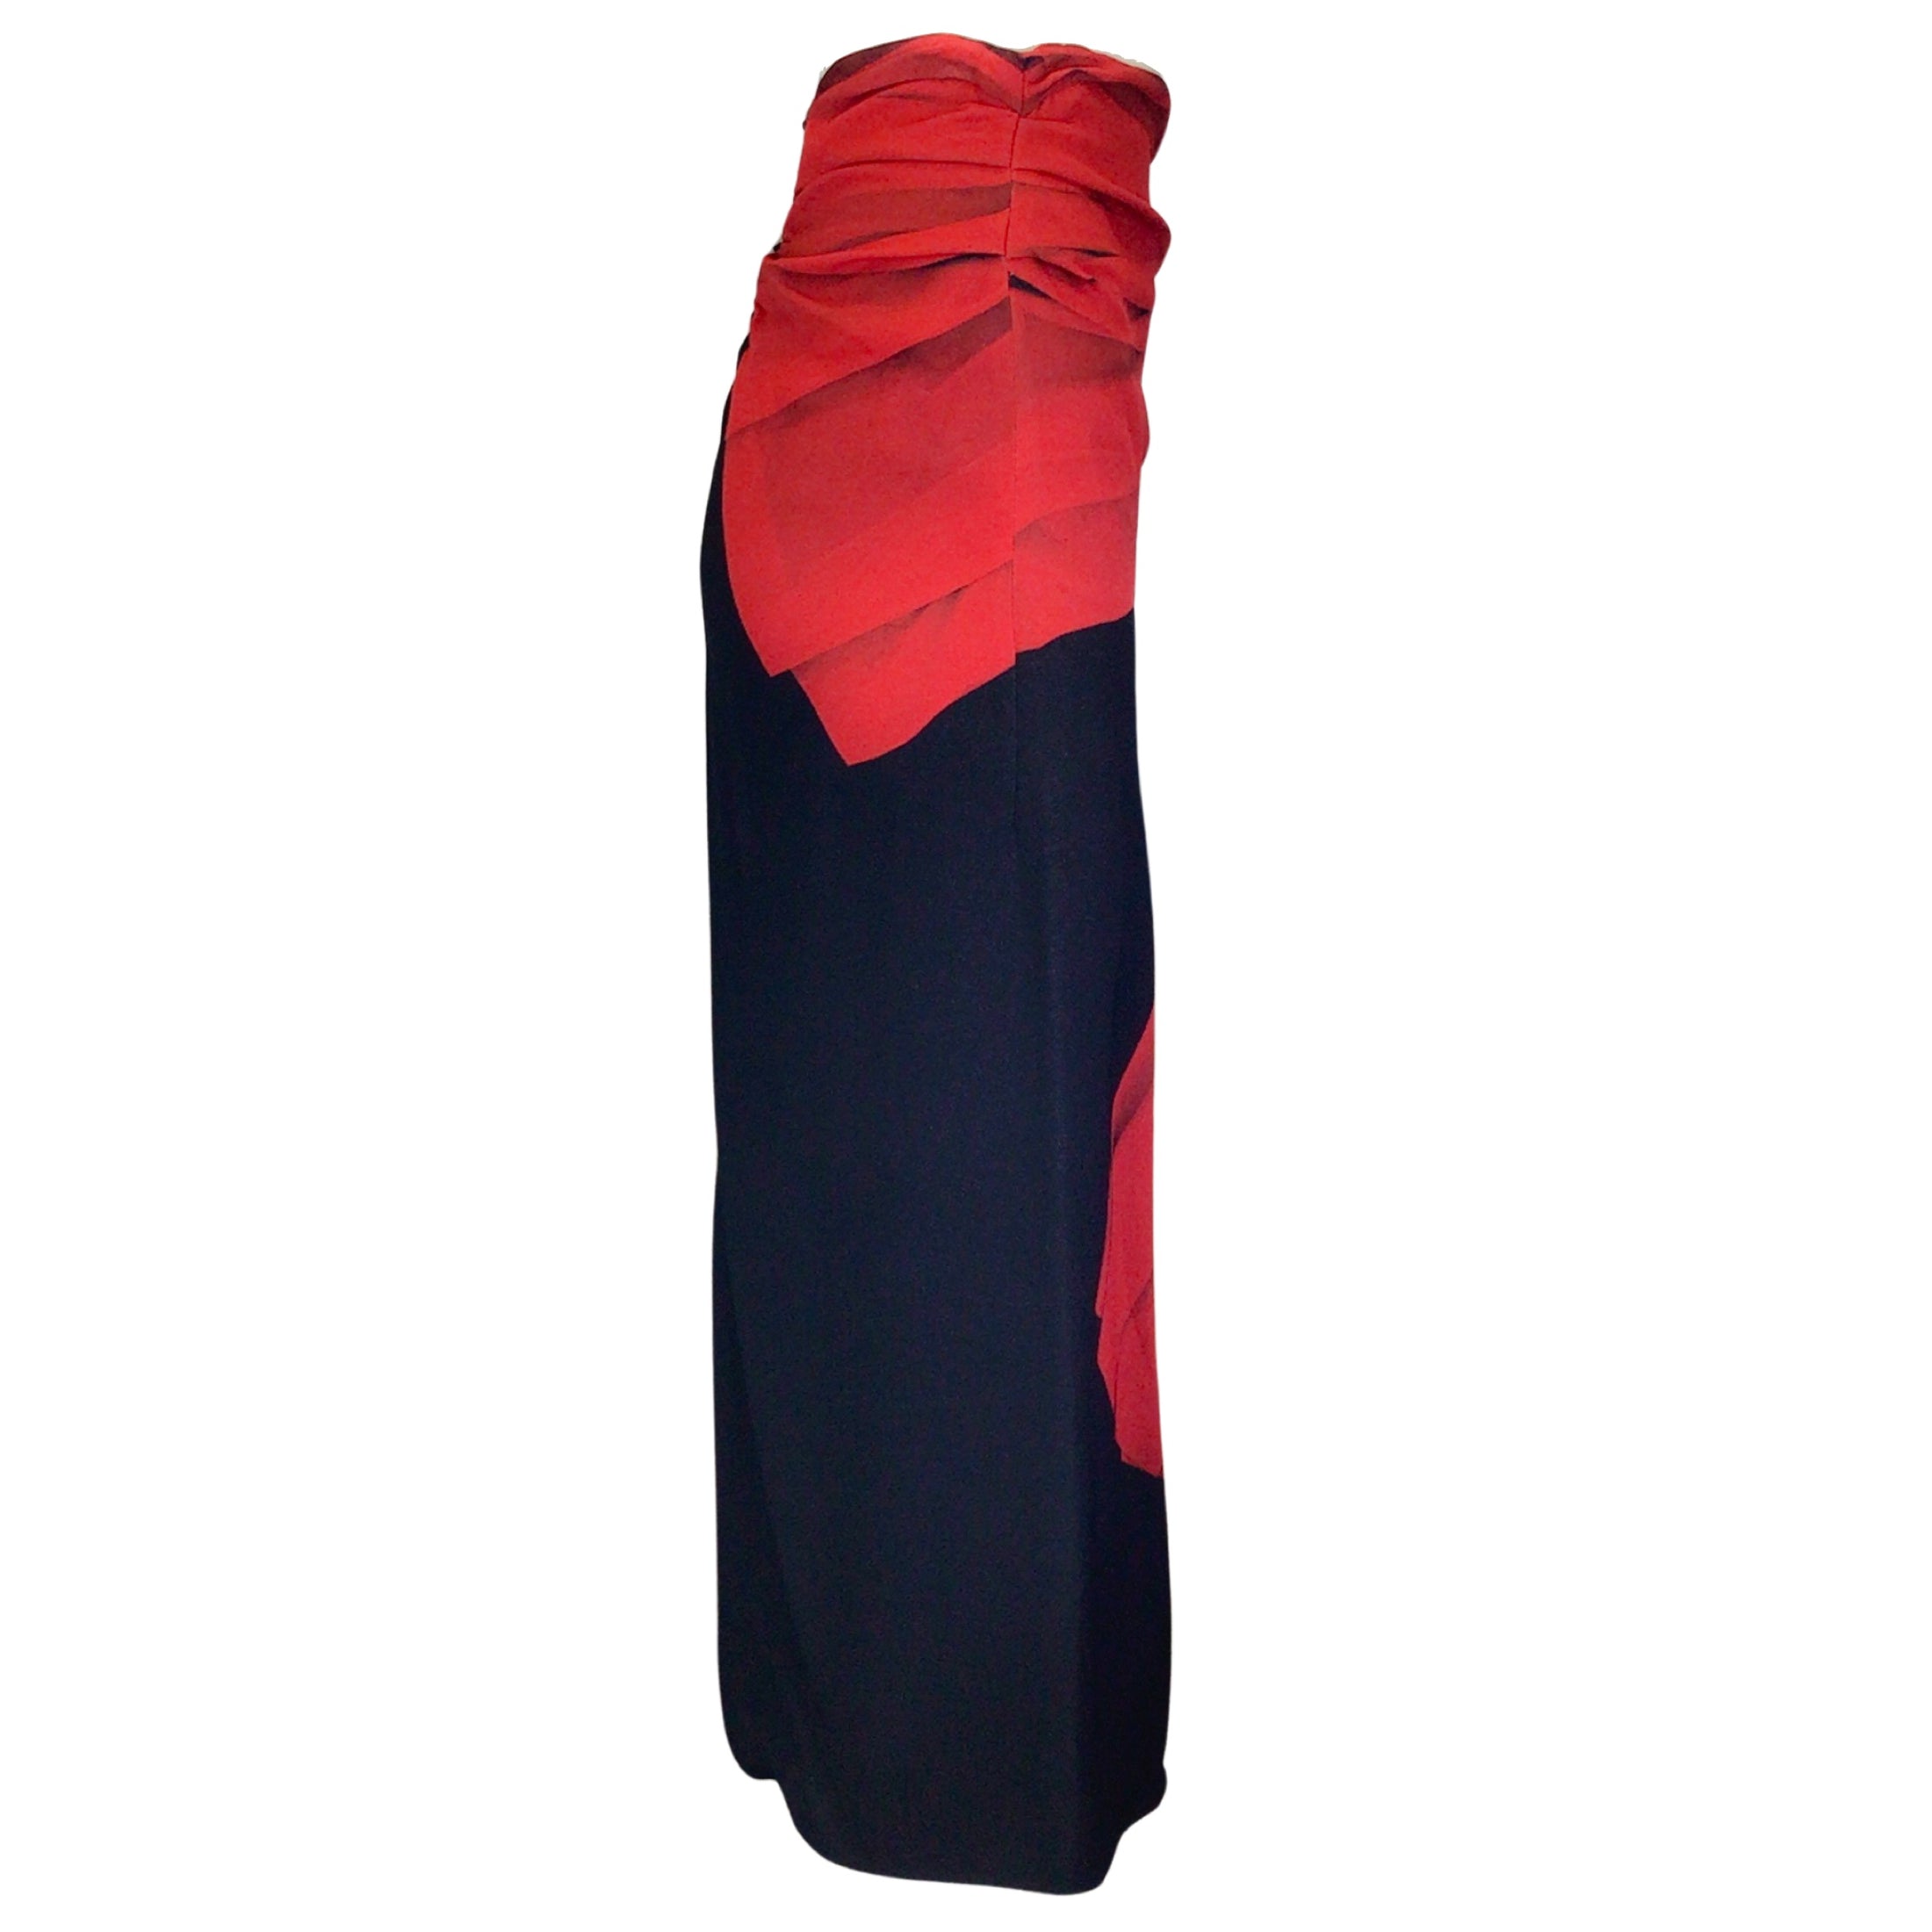 Dries van Noten Black / Red Printed Crepe Midi Skirt